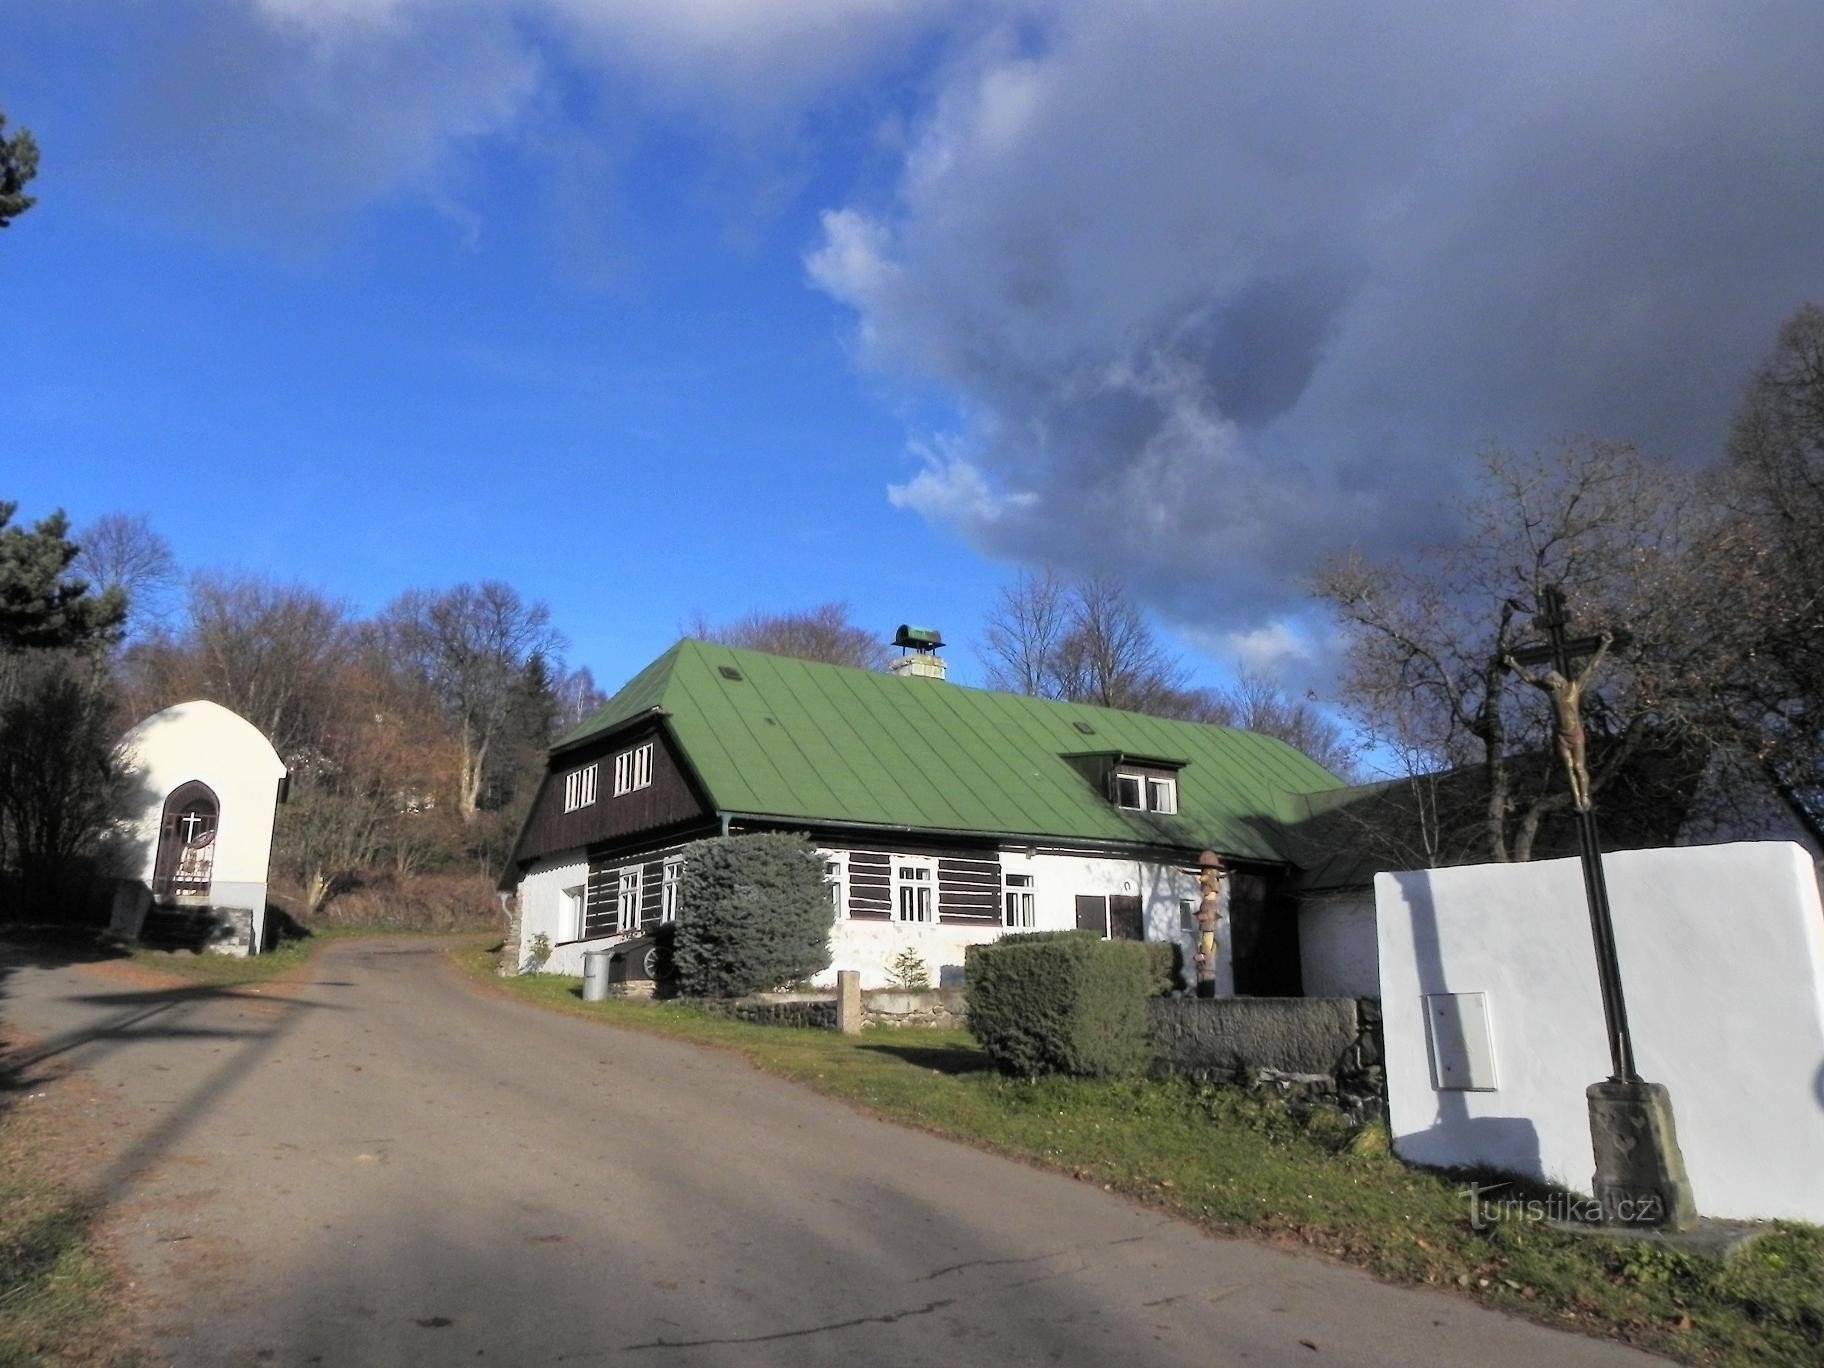 Nicov, kapela in lesena hiša